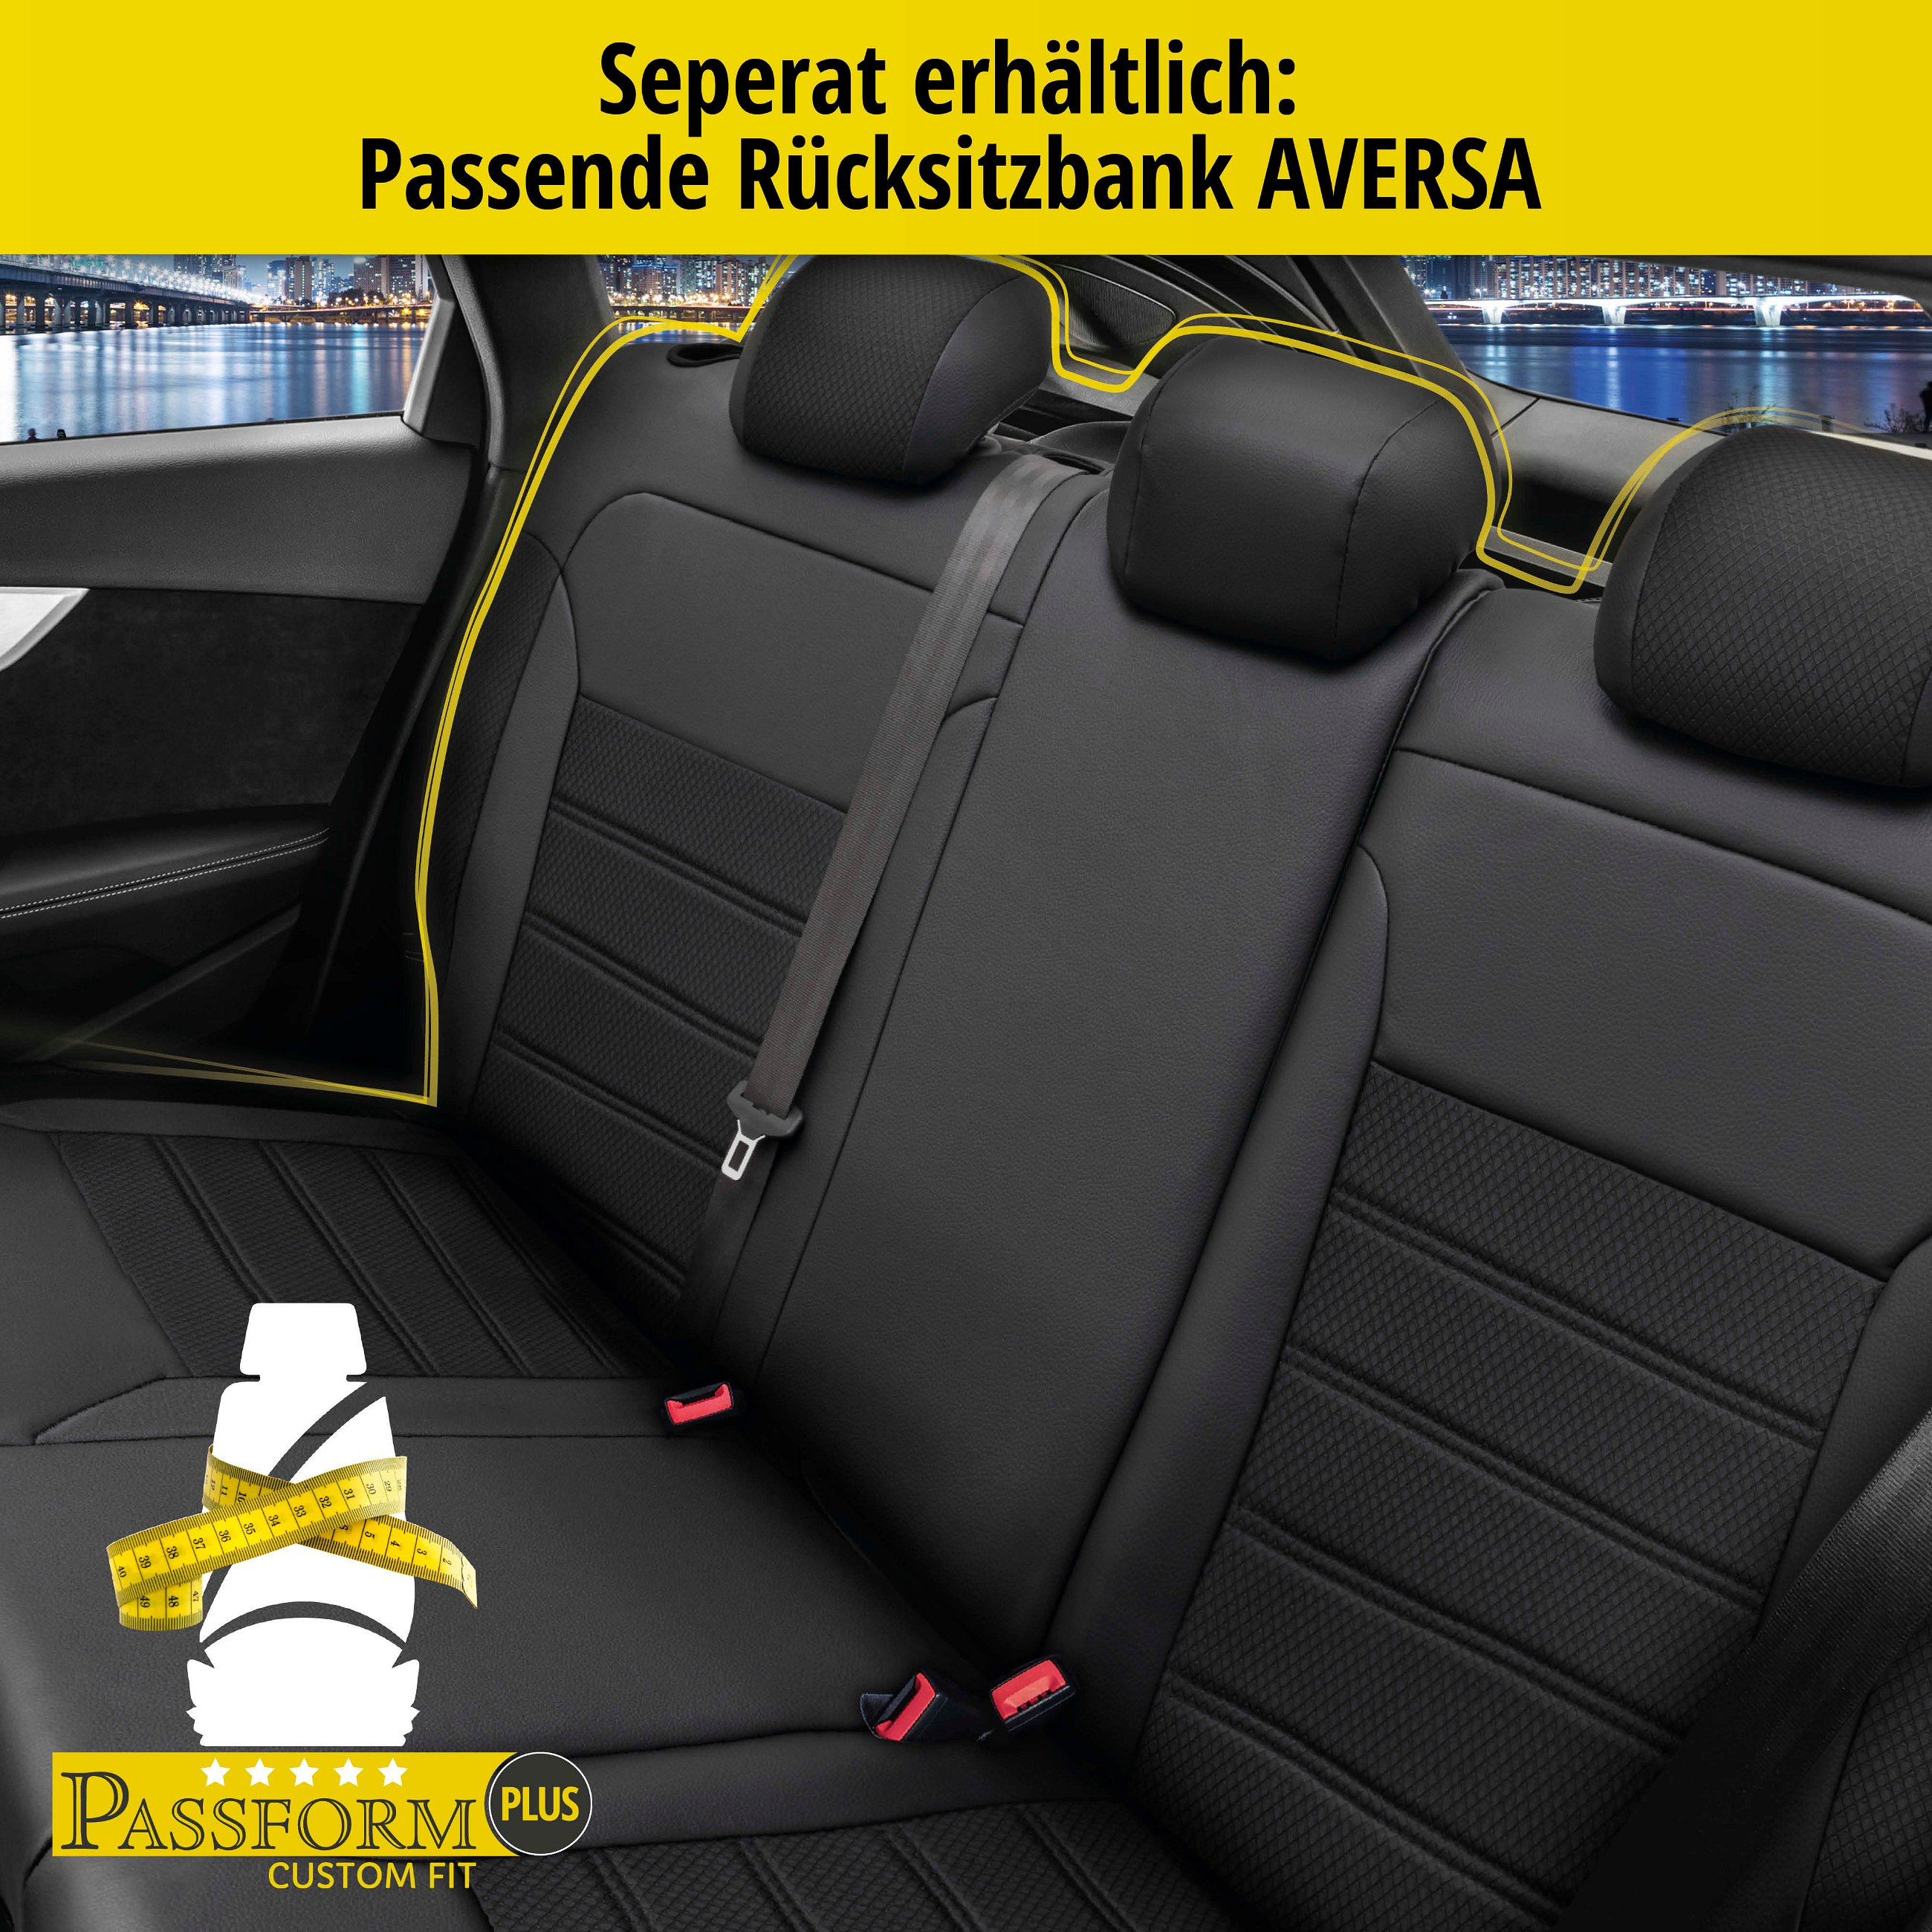 Passform Sitzbezug Aversa für BMW X1 (E84) 03/2009-06/2015, 2 Einzelsitzbezüge für Normalsitze